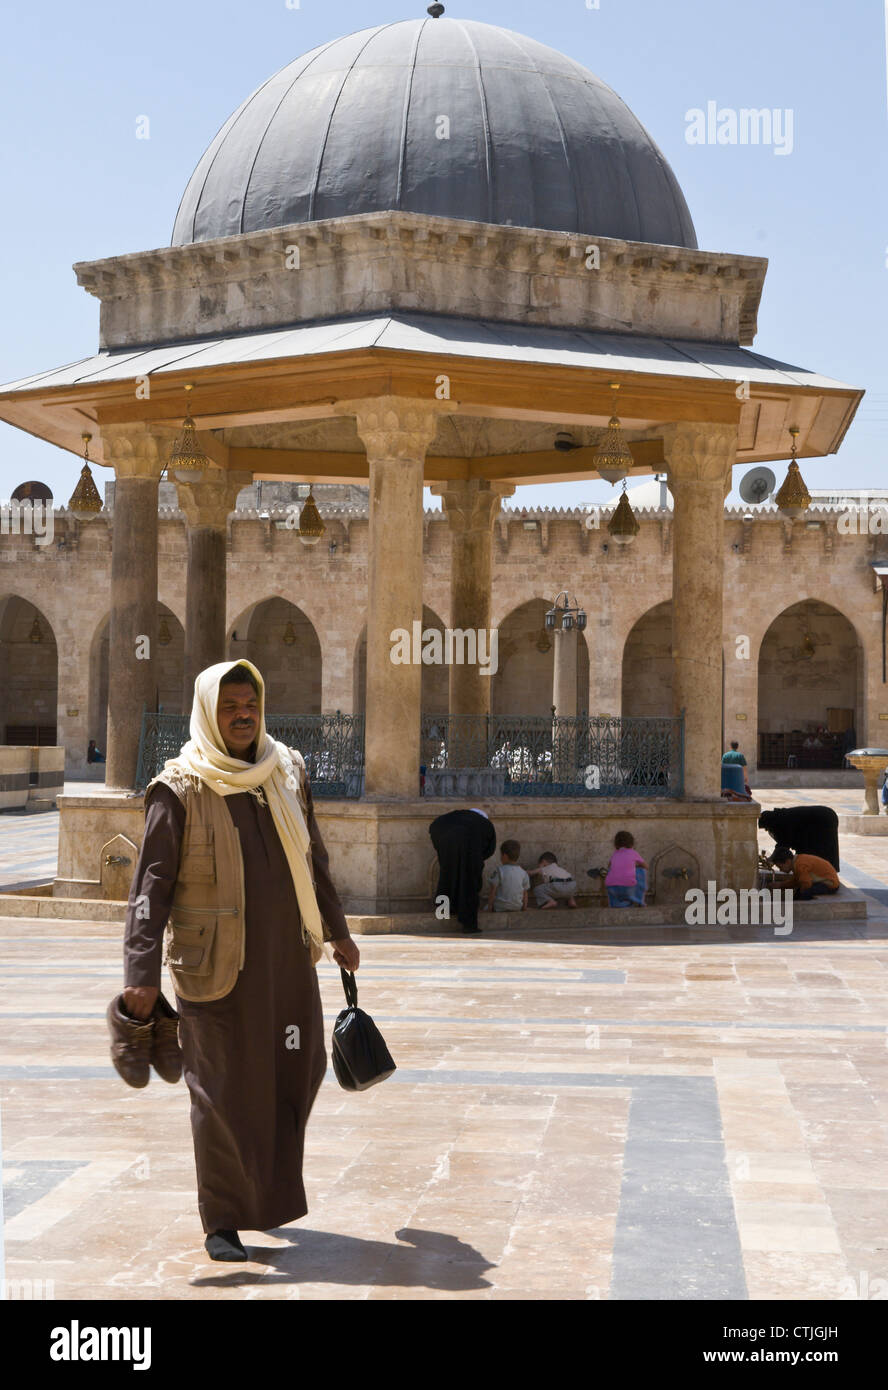 La Grande Moschea, Aleppo, Siria, Al-Jamaa al-Kebir. Le abluzioni fontana. Aleppo city center è un sito Patrimonio Mondiale dell'UNESCO Foto Stock